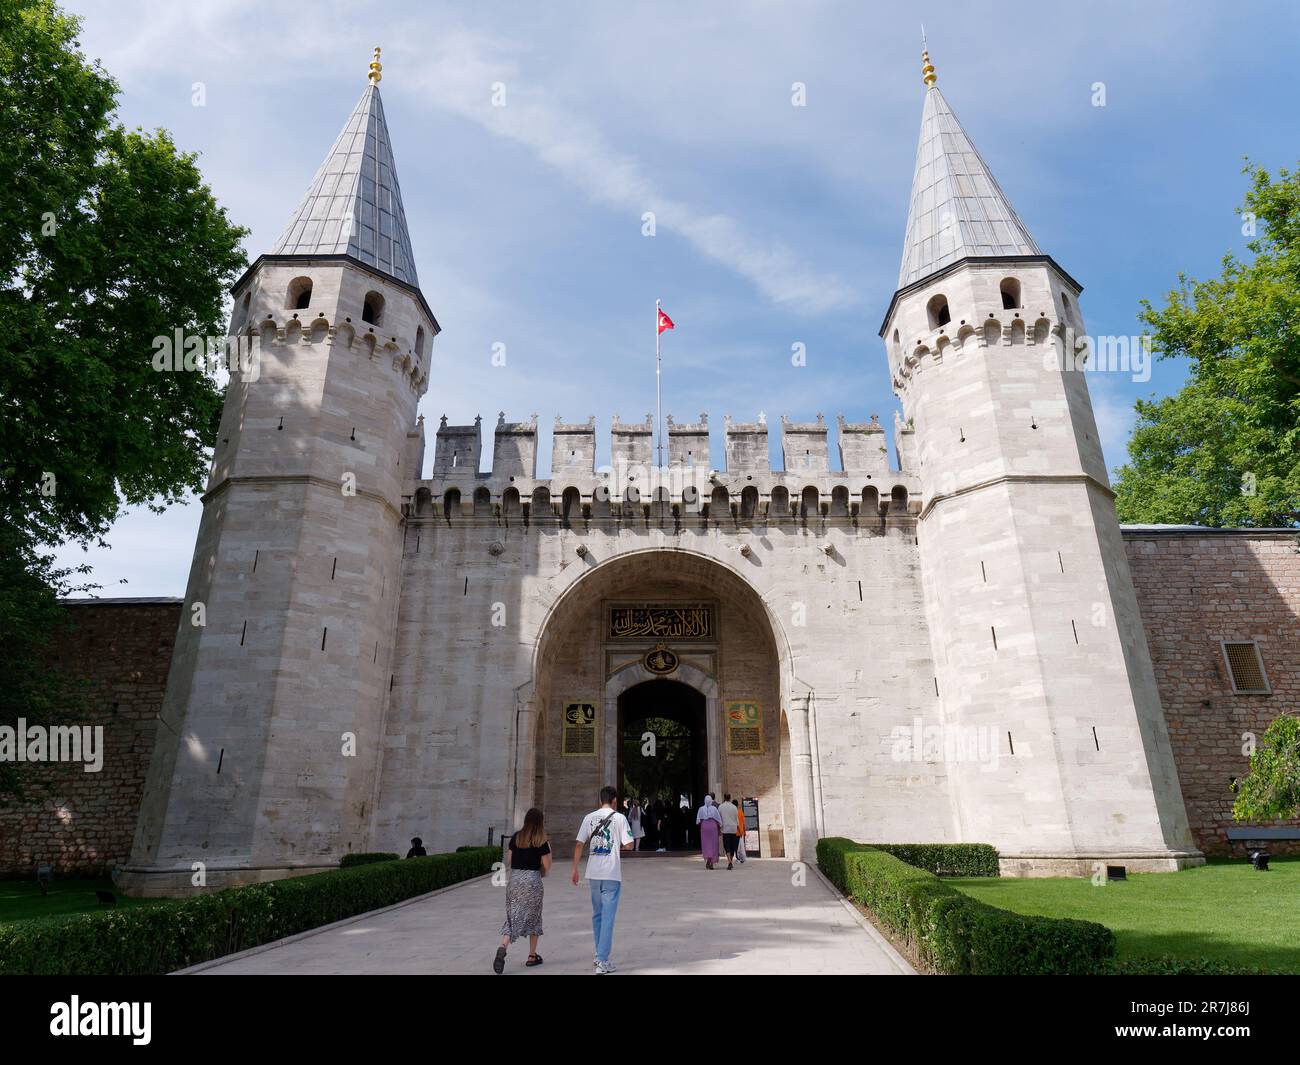 Das Tor der Anrede, das zweite Tor zum Topkapi-Palast, Istanbul, Türkei. Historischer Palastkomplex aus der osmanischen Ära Stockfoto